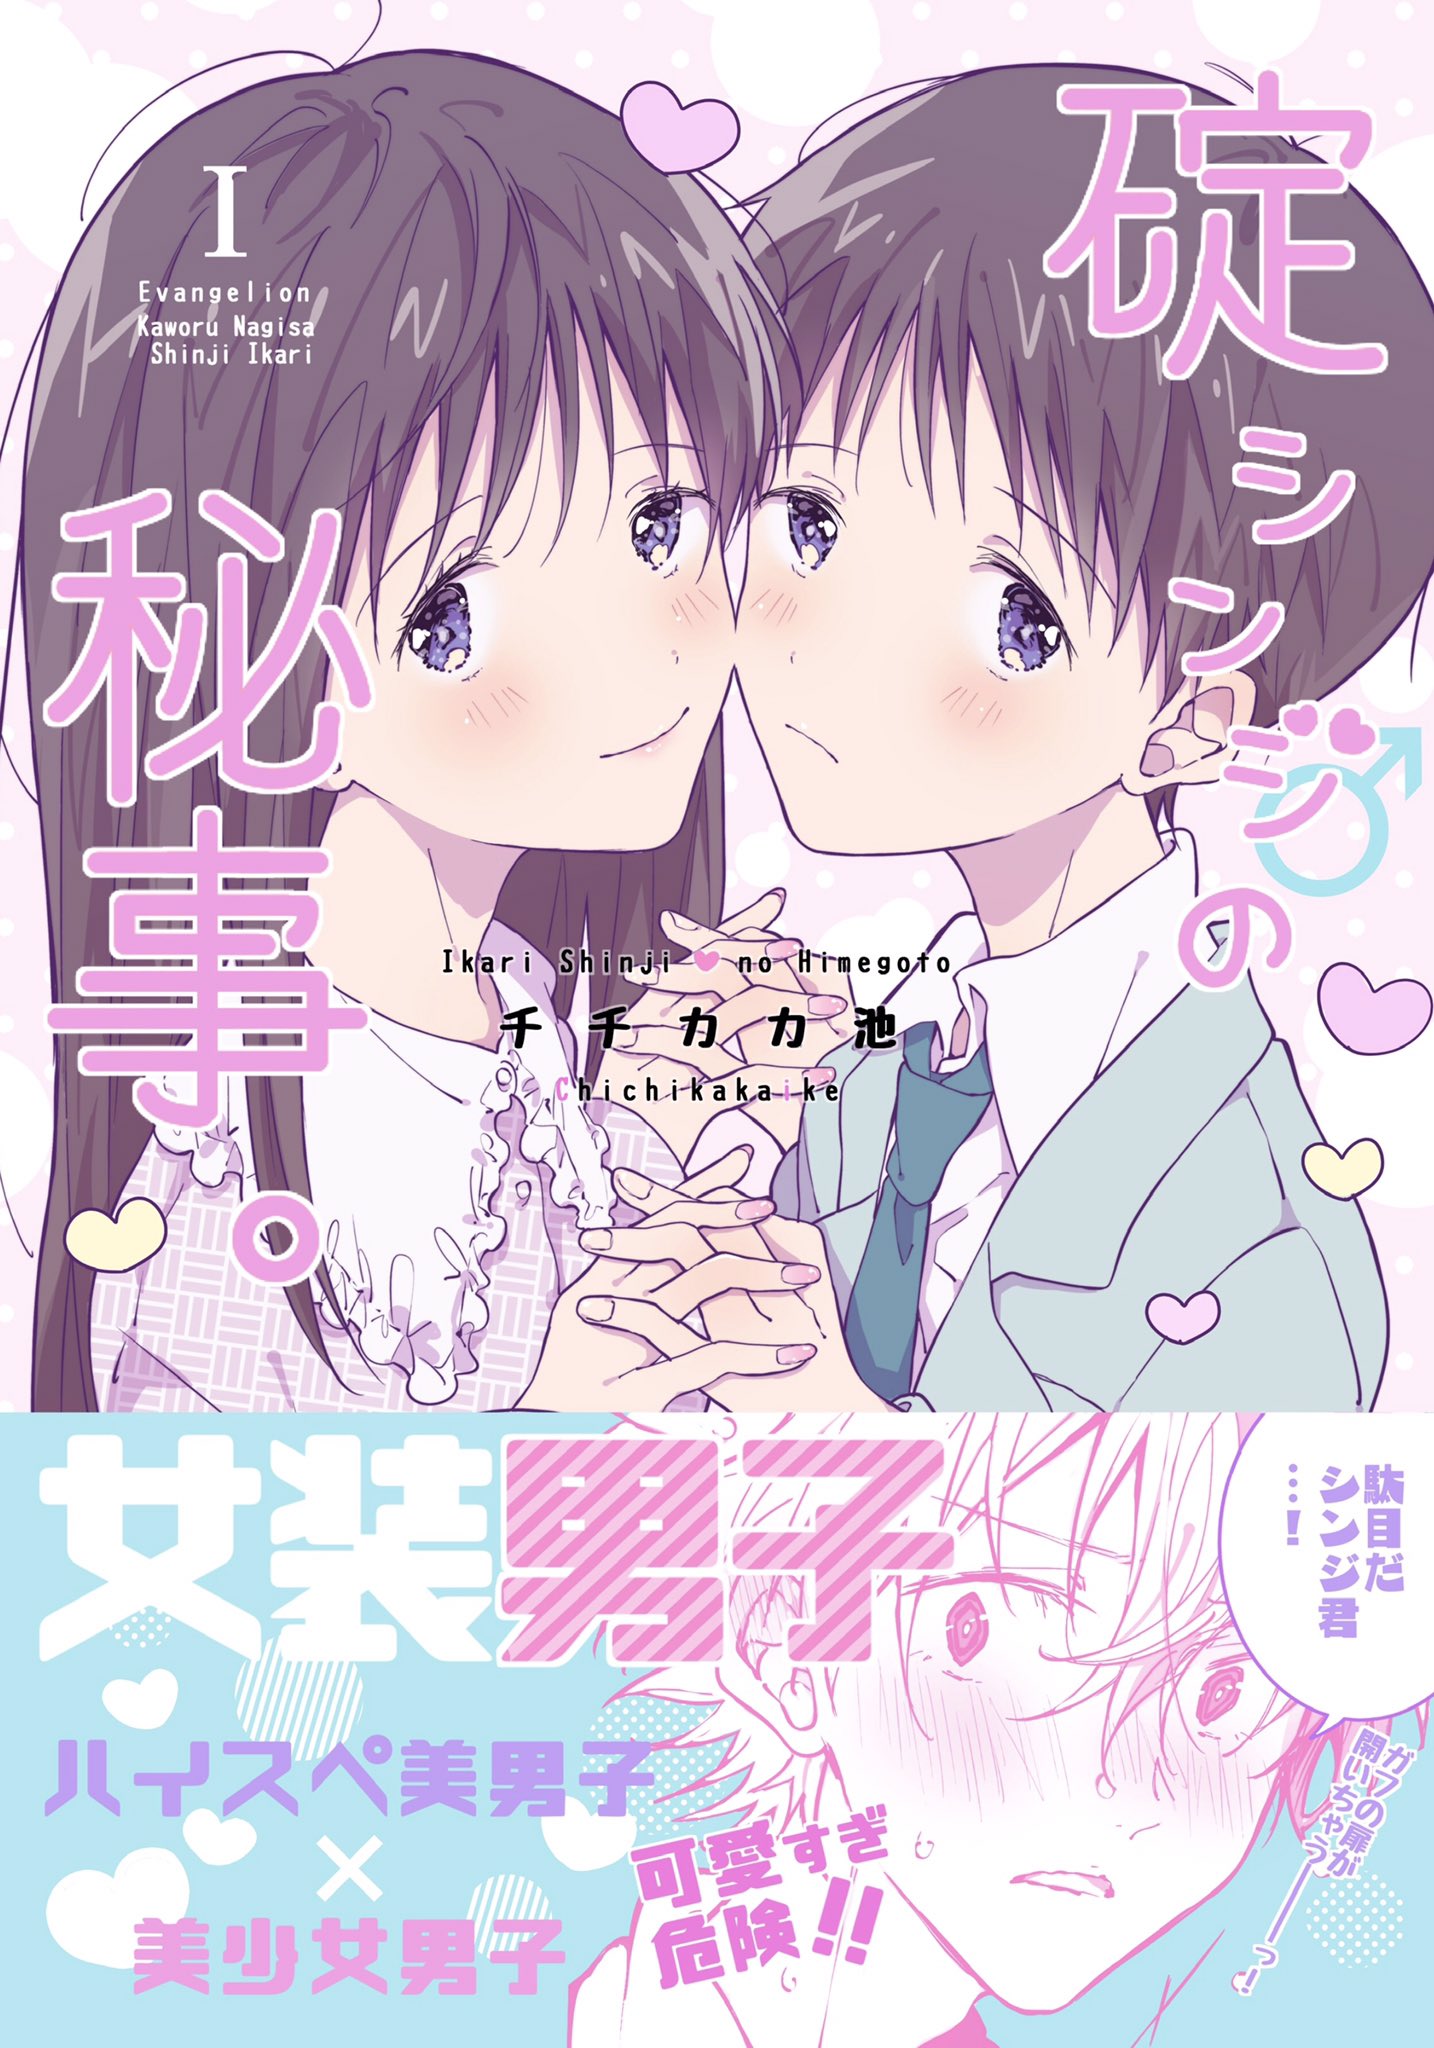 Shinji Ikari's Secret manga